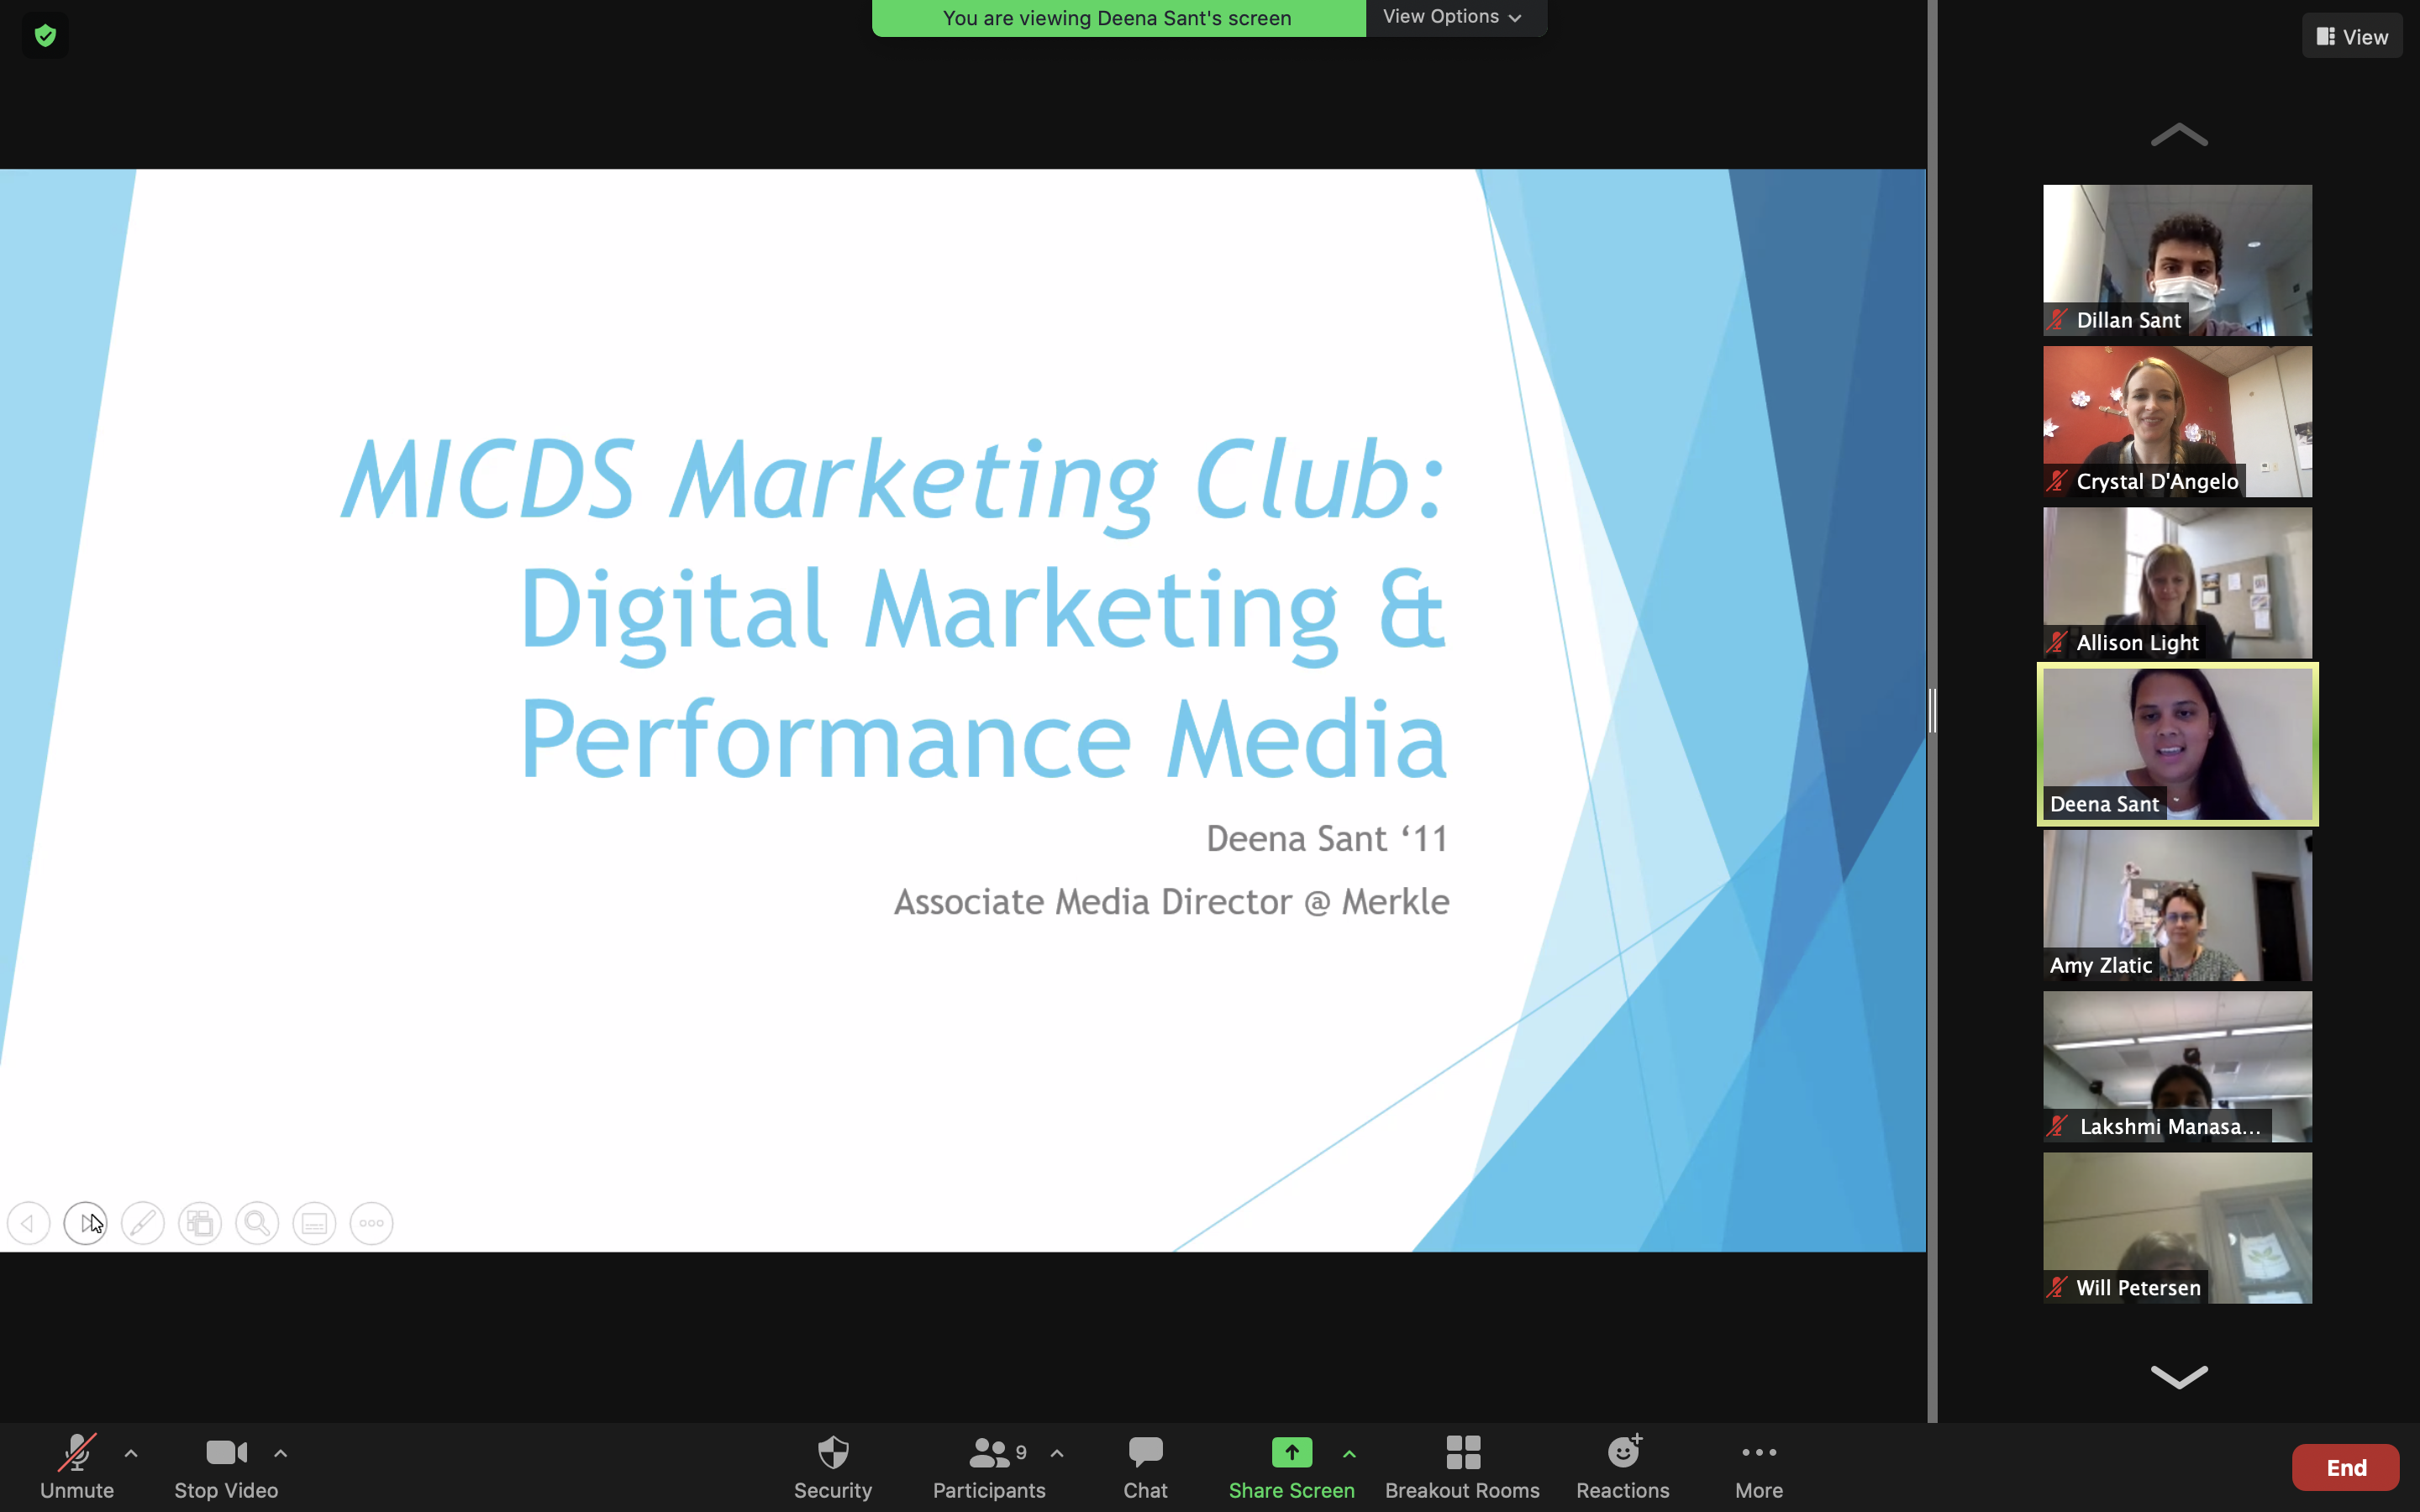 Marketing Club presentation